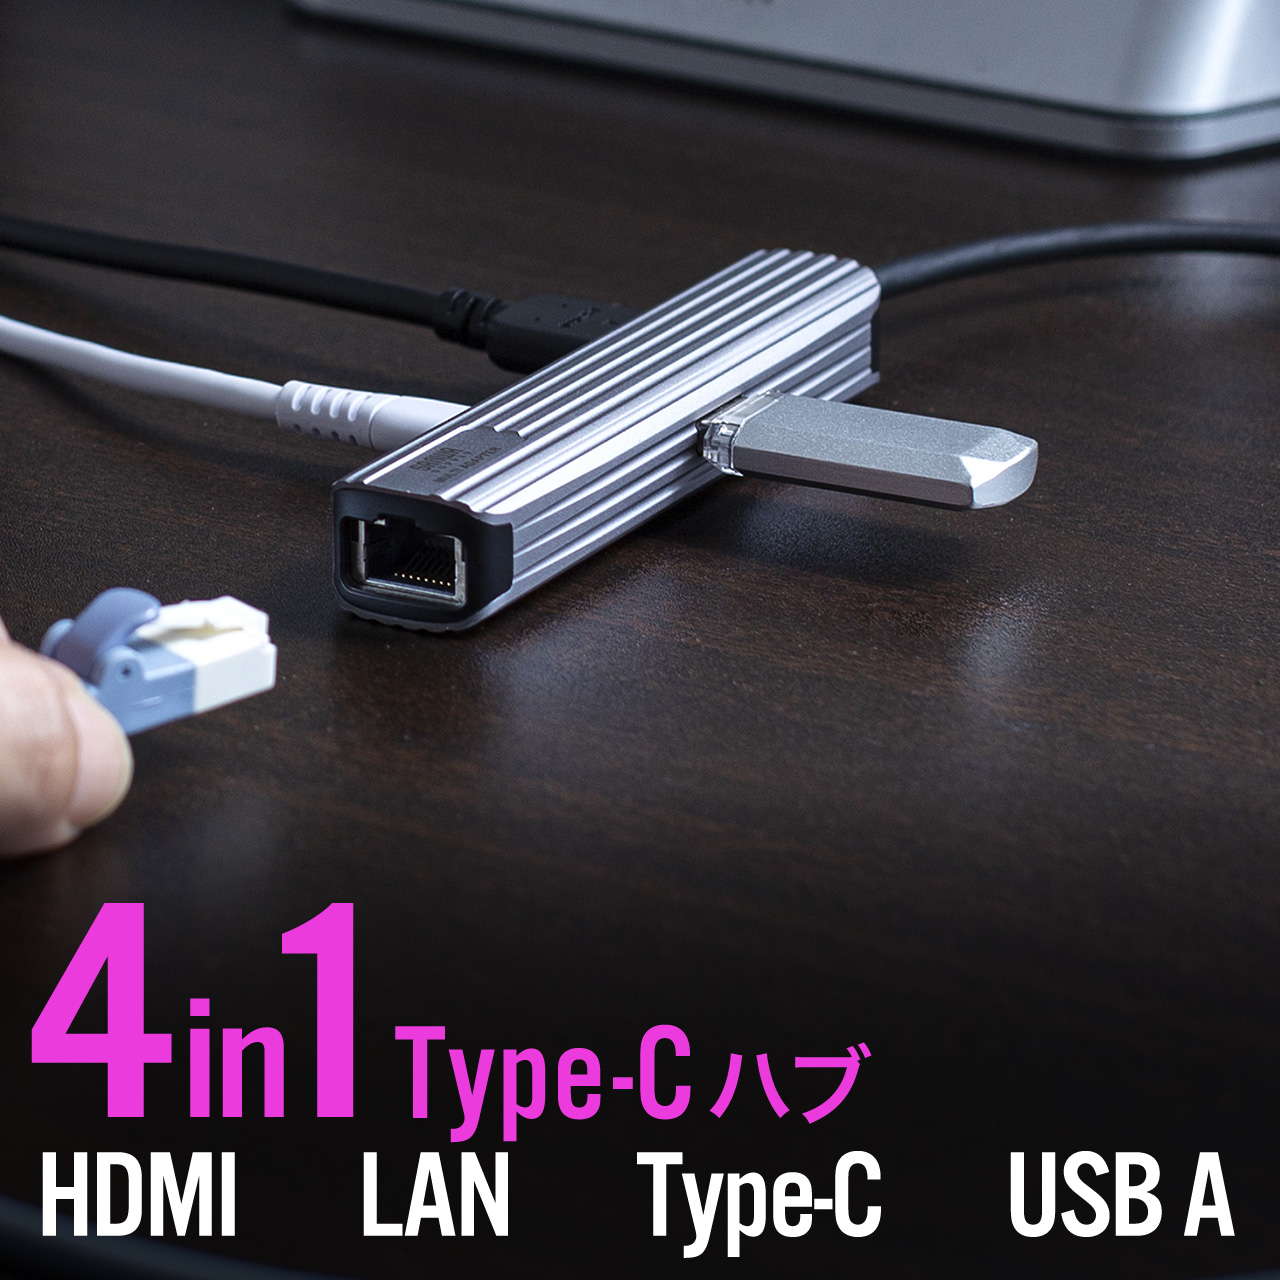 USBハブ HDMI出力対応 小型 ドッキングステーション LANポート Type-C